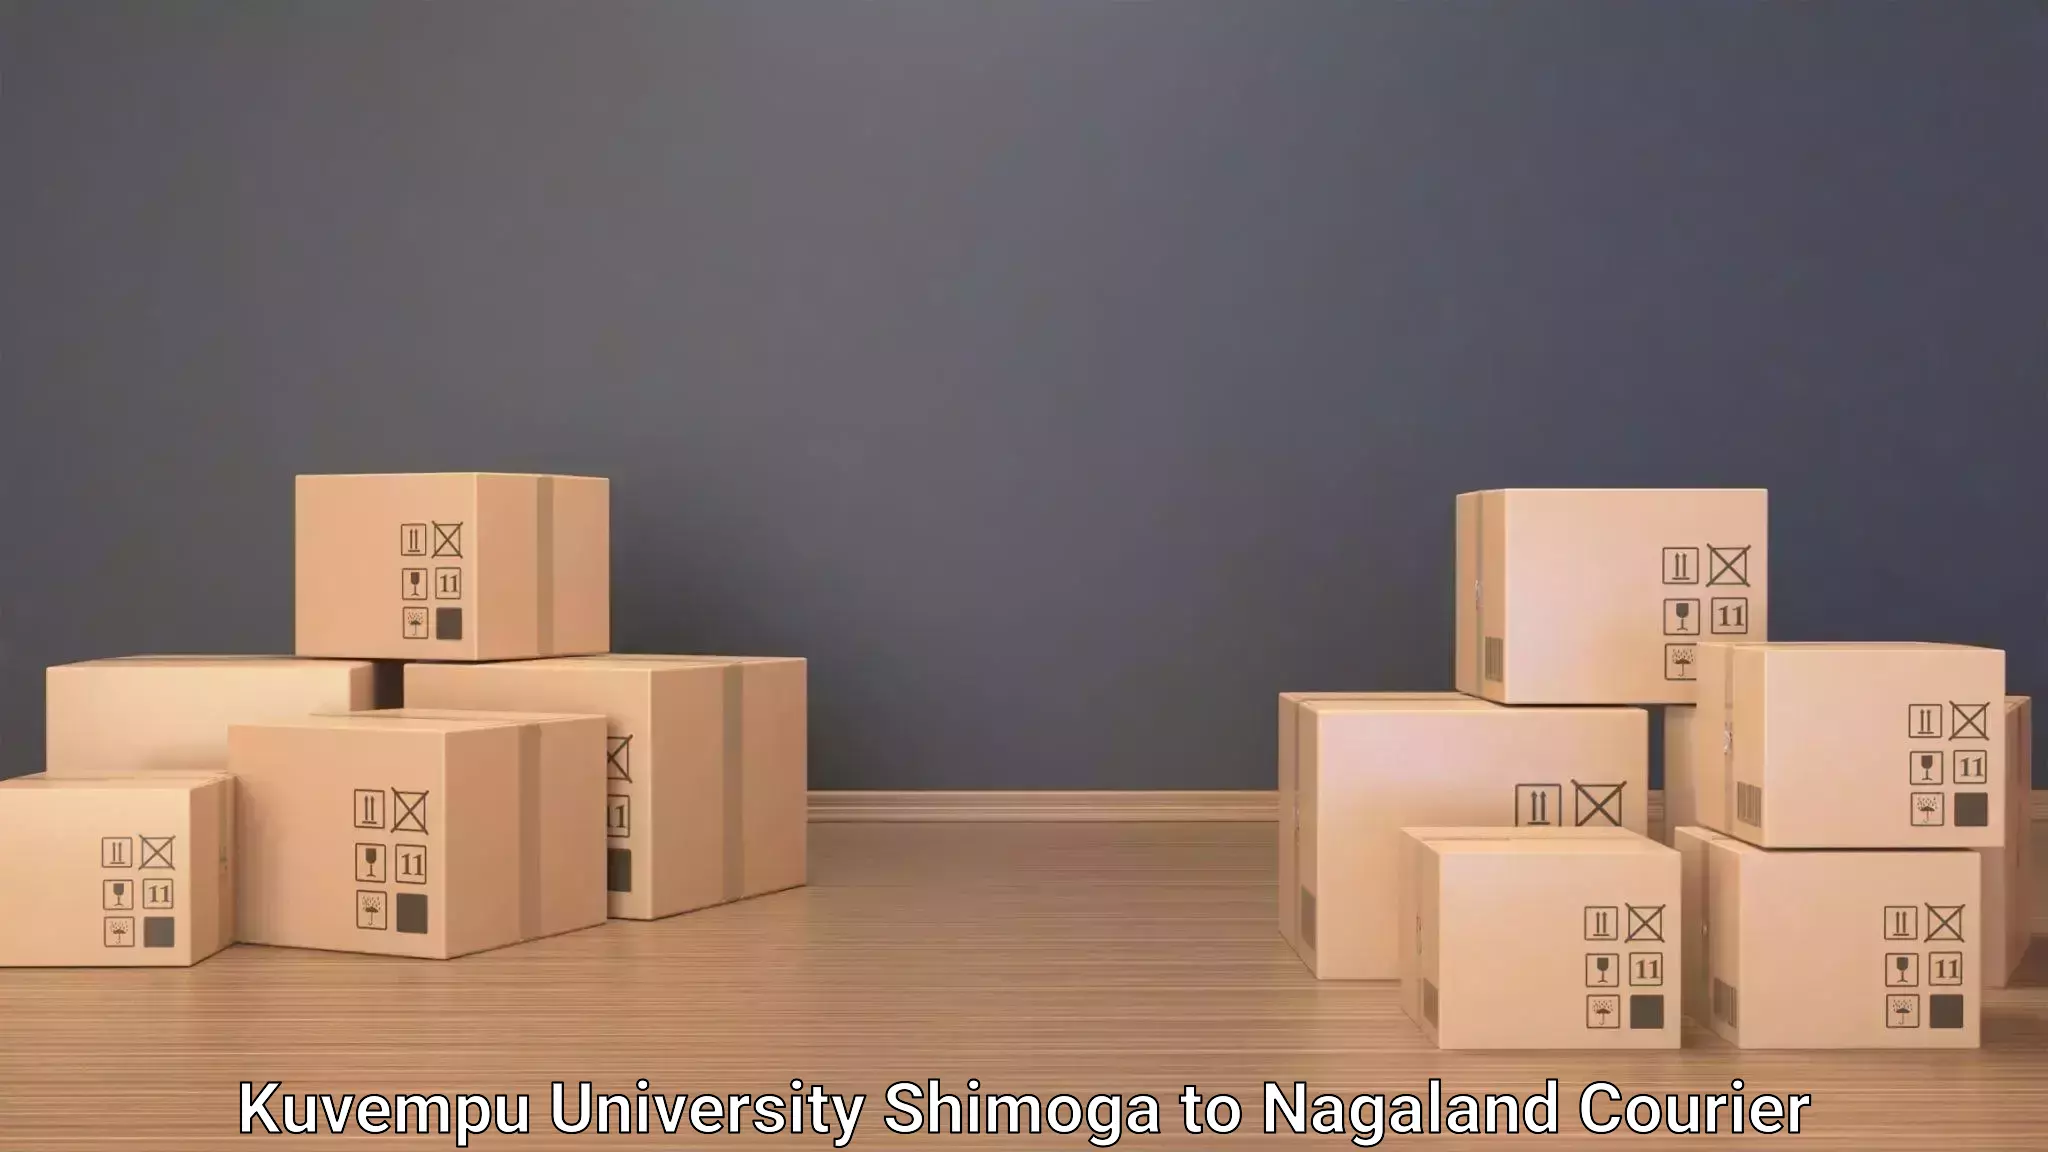 Luggage delivery system Kuvempu University Shimoga to Longleng